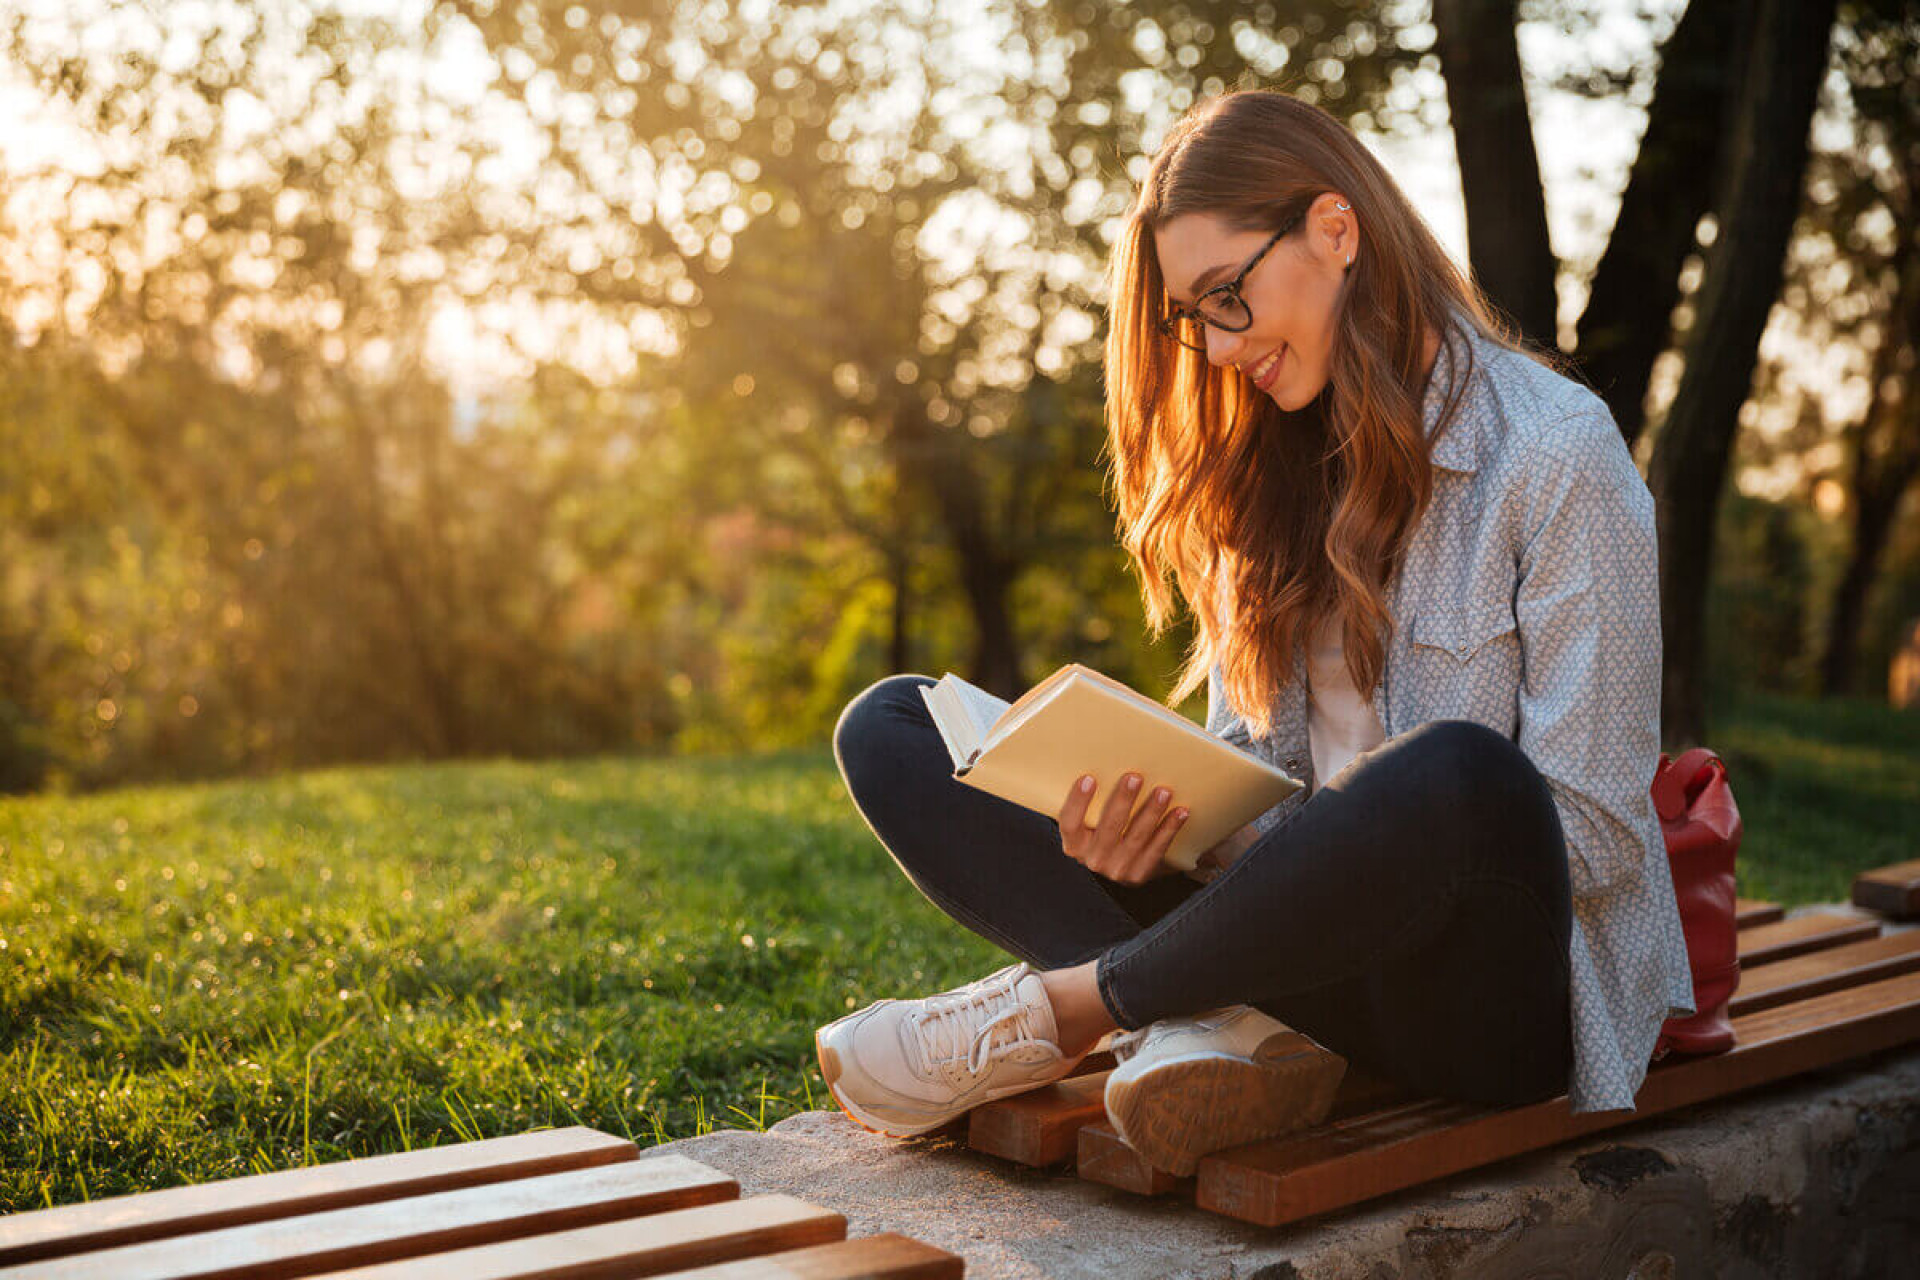 Ler ajuda a absorver novos conhecimentos (Imagem: Dean Drobot | Shutterstock) - Portal EdiCase